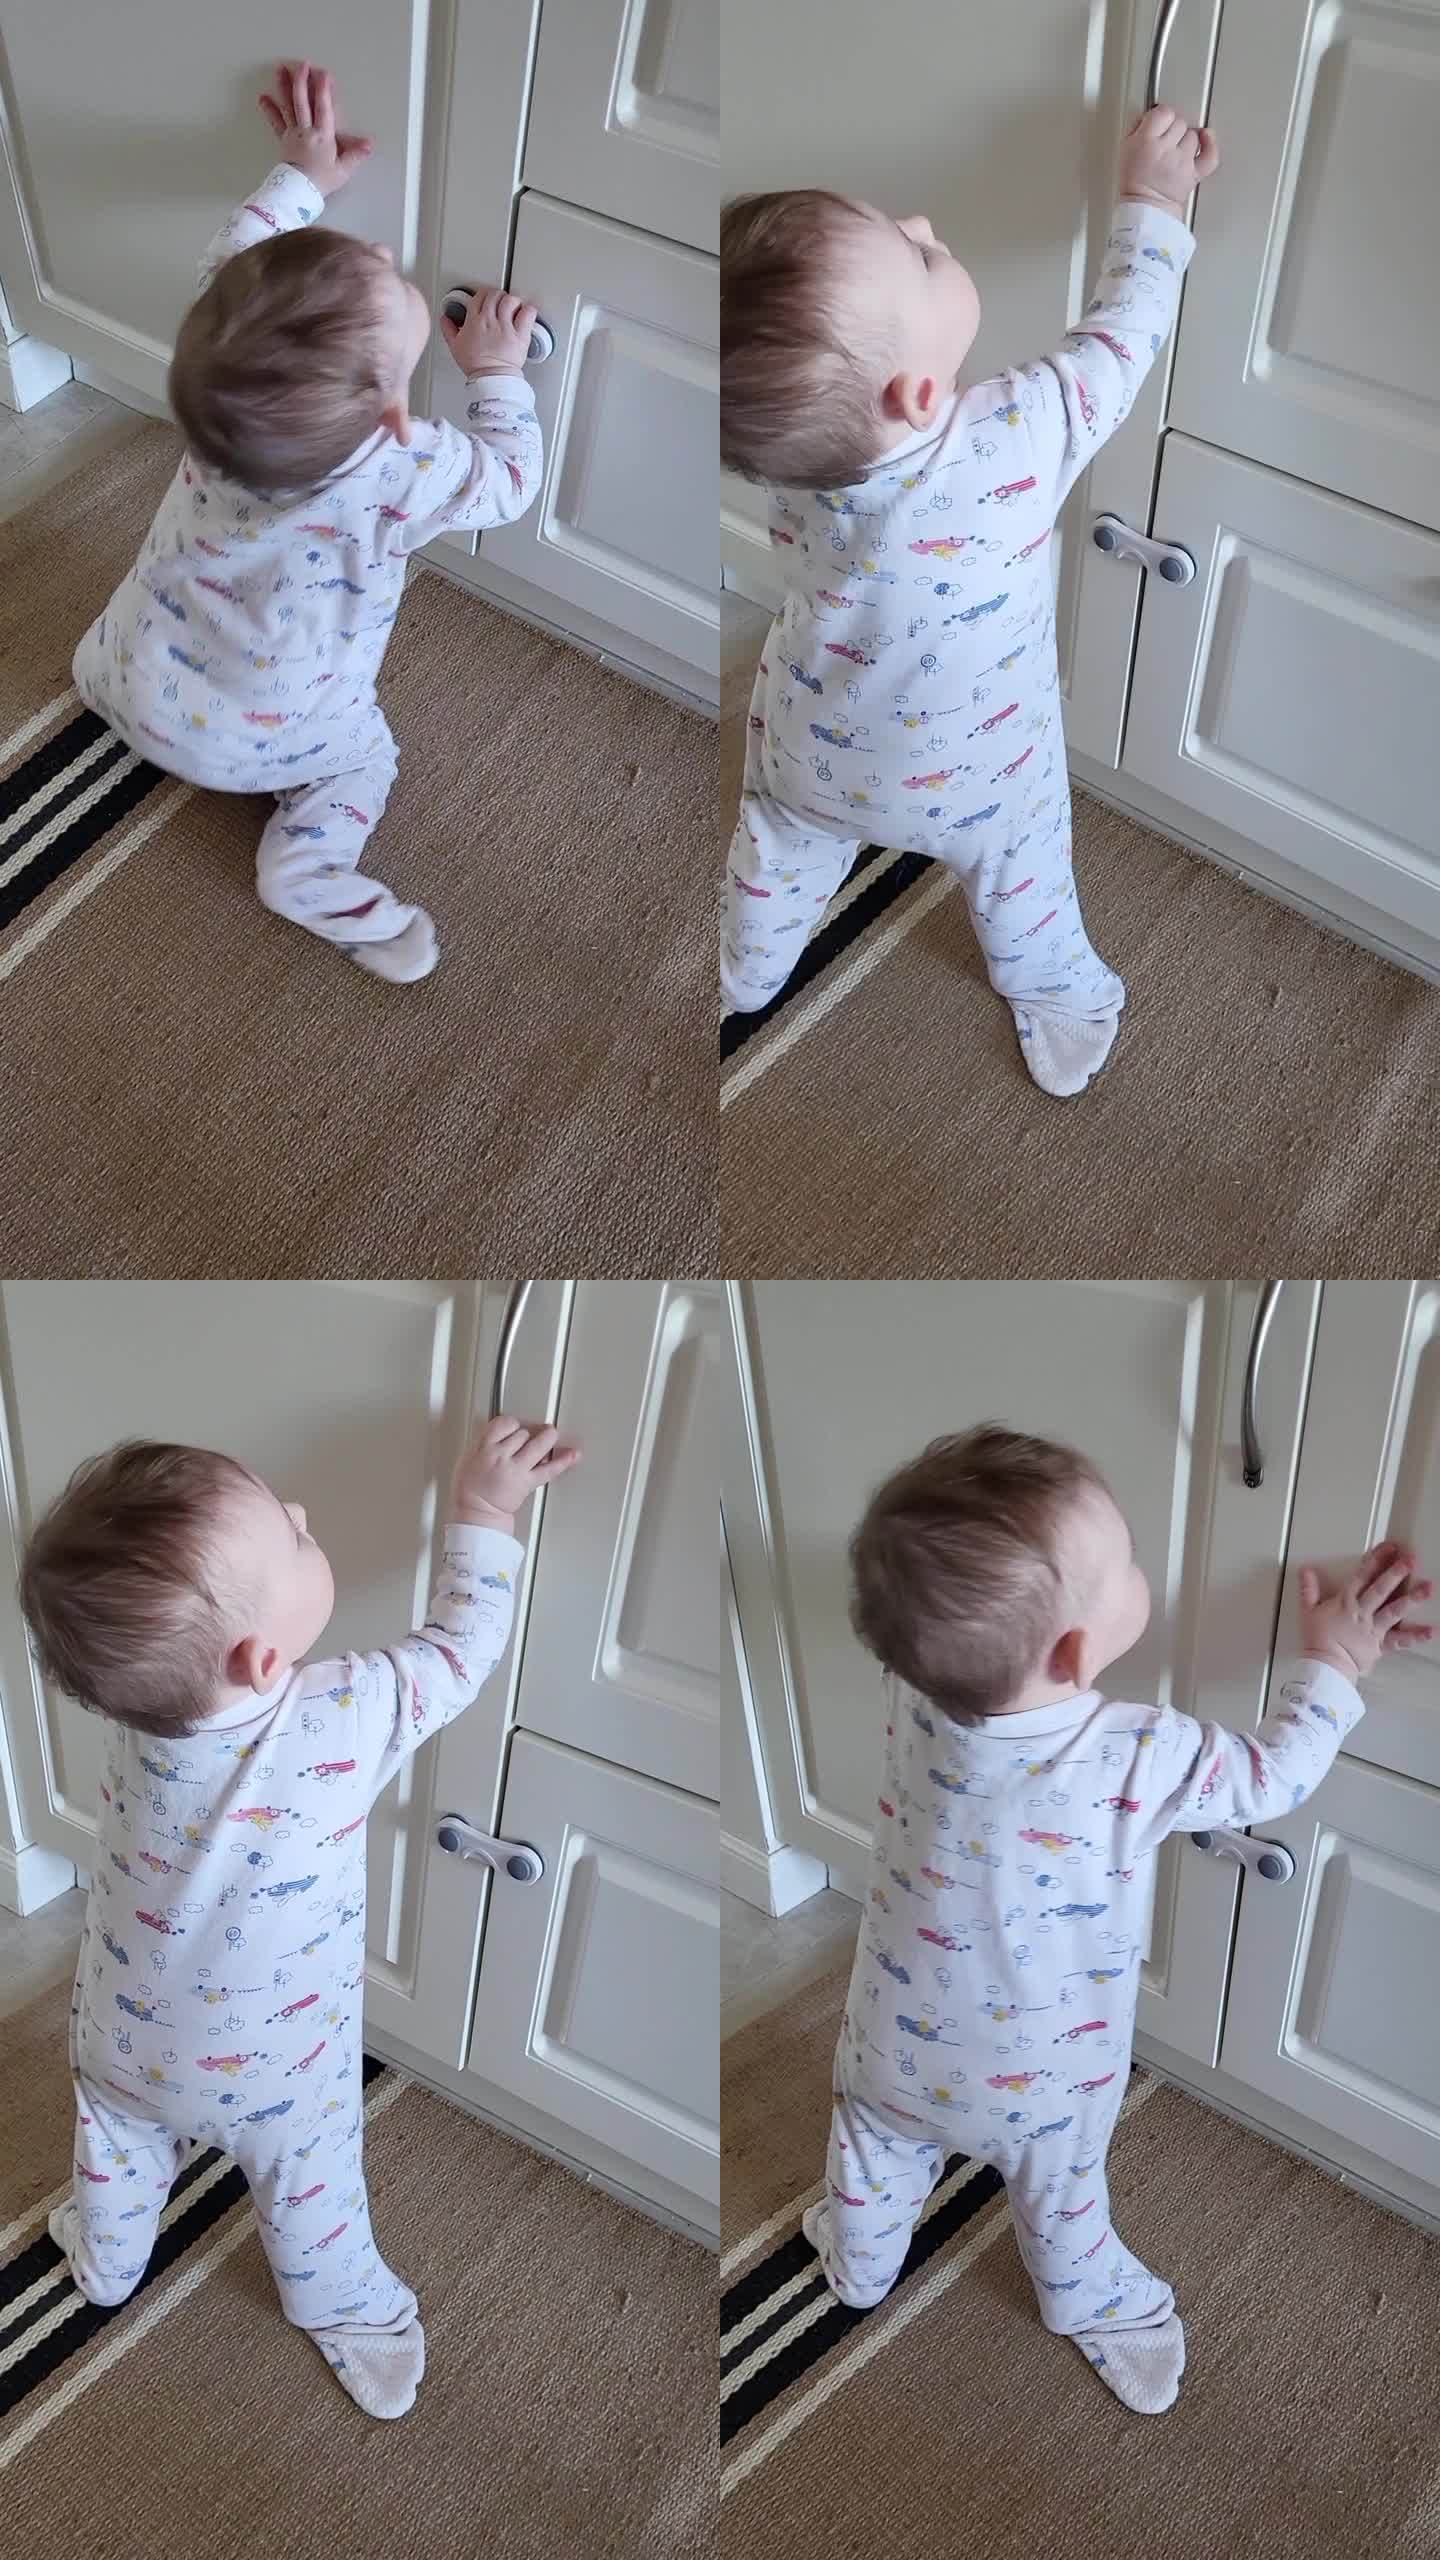 小婴儿打开了一个封闭的壁橱的门。一个好奇的孩子试图打开家具里的抽屉。8个月大的孩子